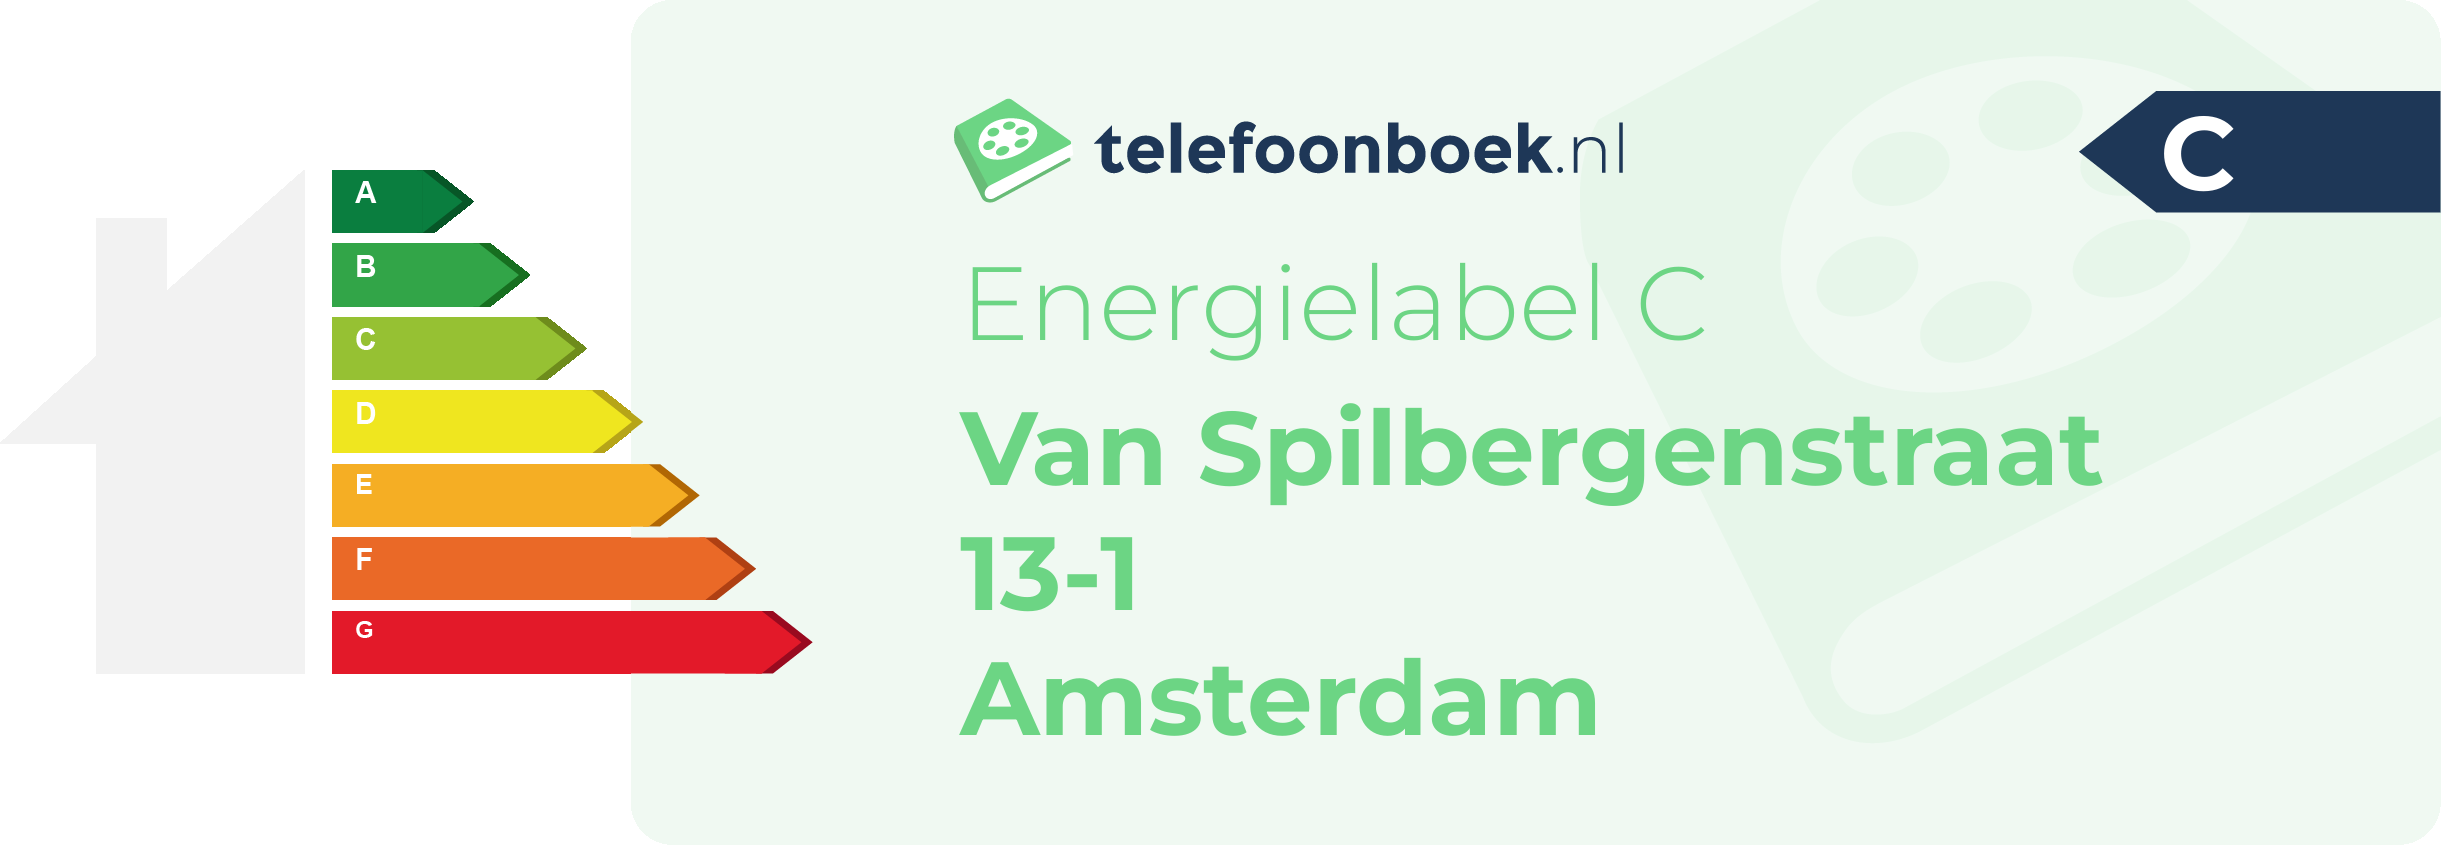 Energielabel Van Spilbergenstraat 13-1 Amsterdam